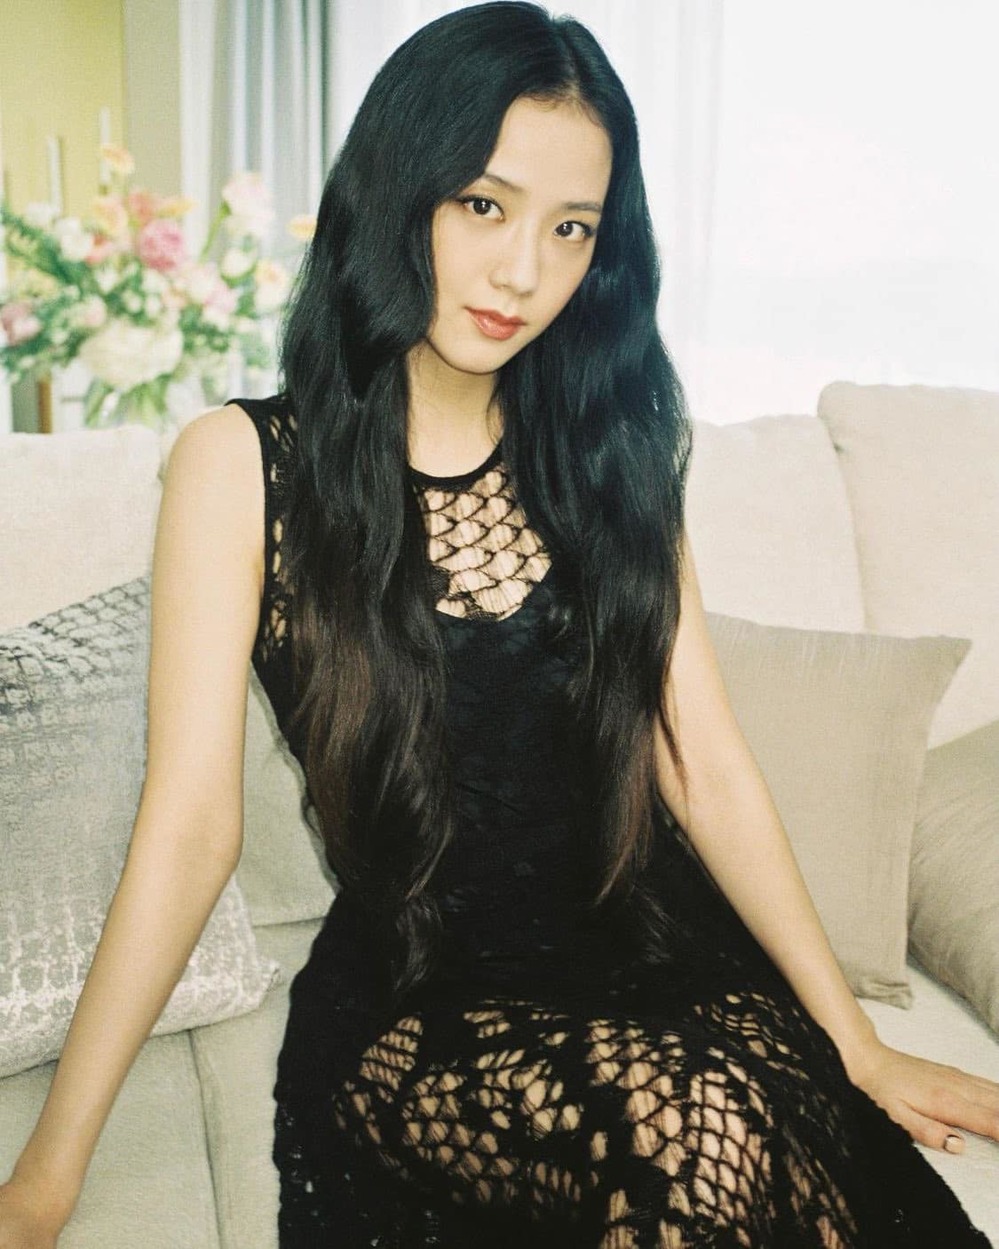  Nhan sắc của Jisoo được ví như "Hoa hậu Hàn Quốc". (Ảnh: Instagram @sooyaaa__)